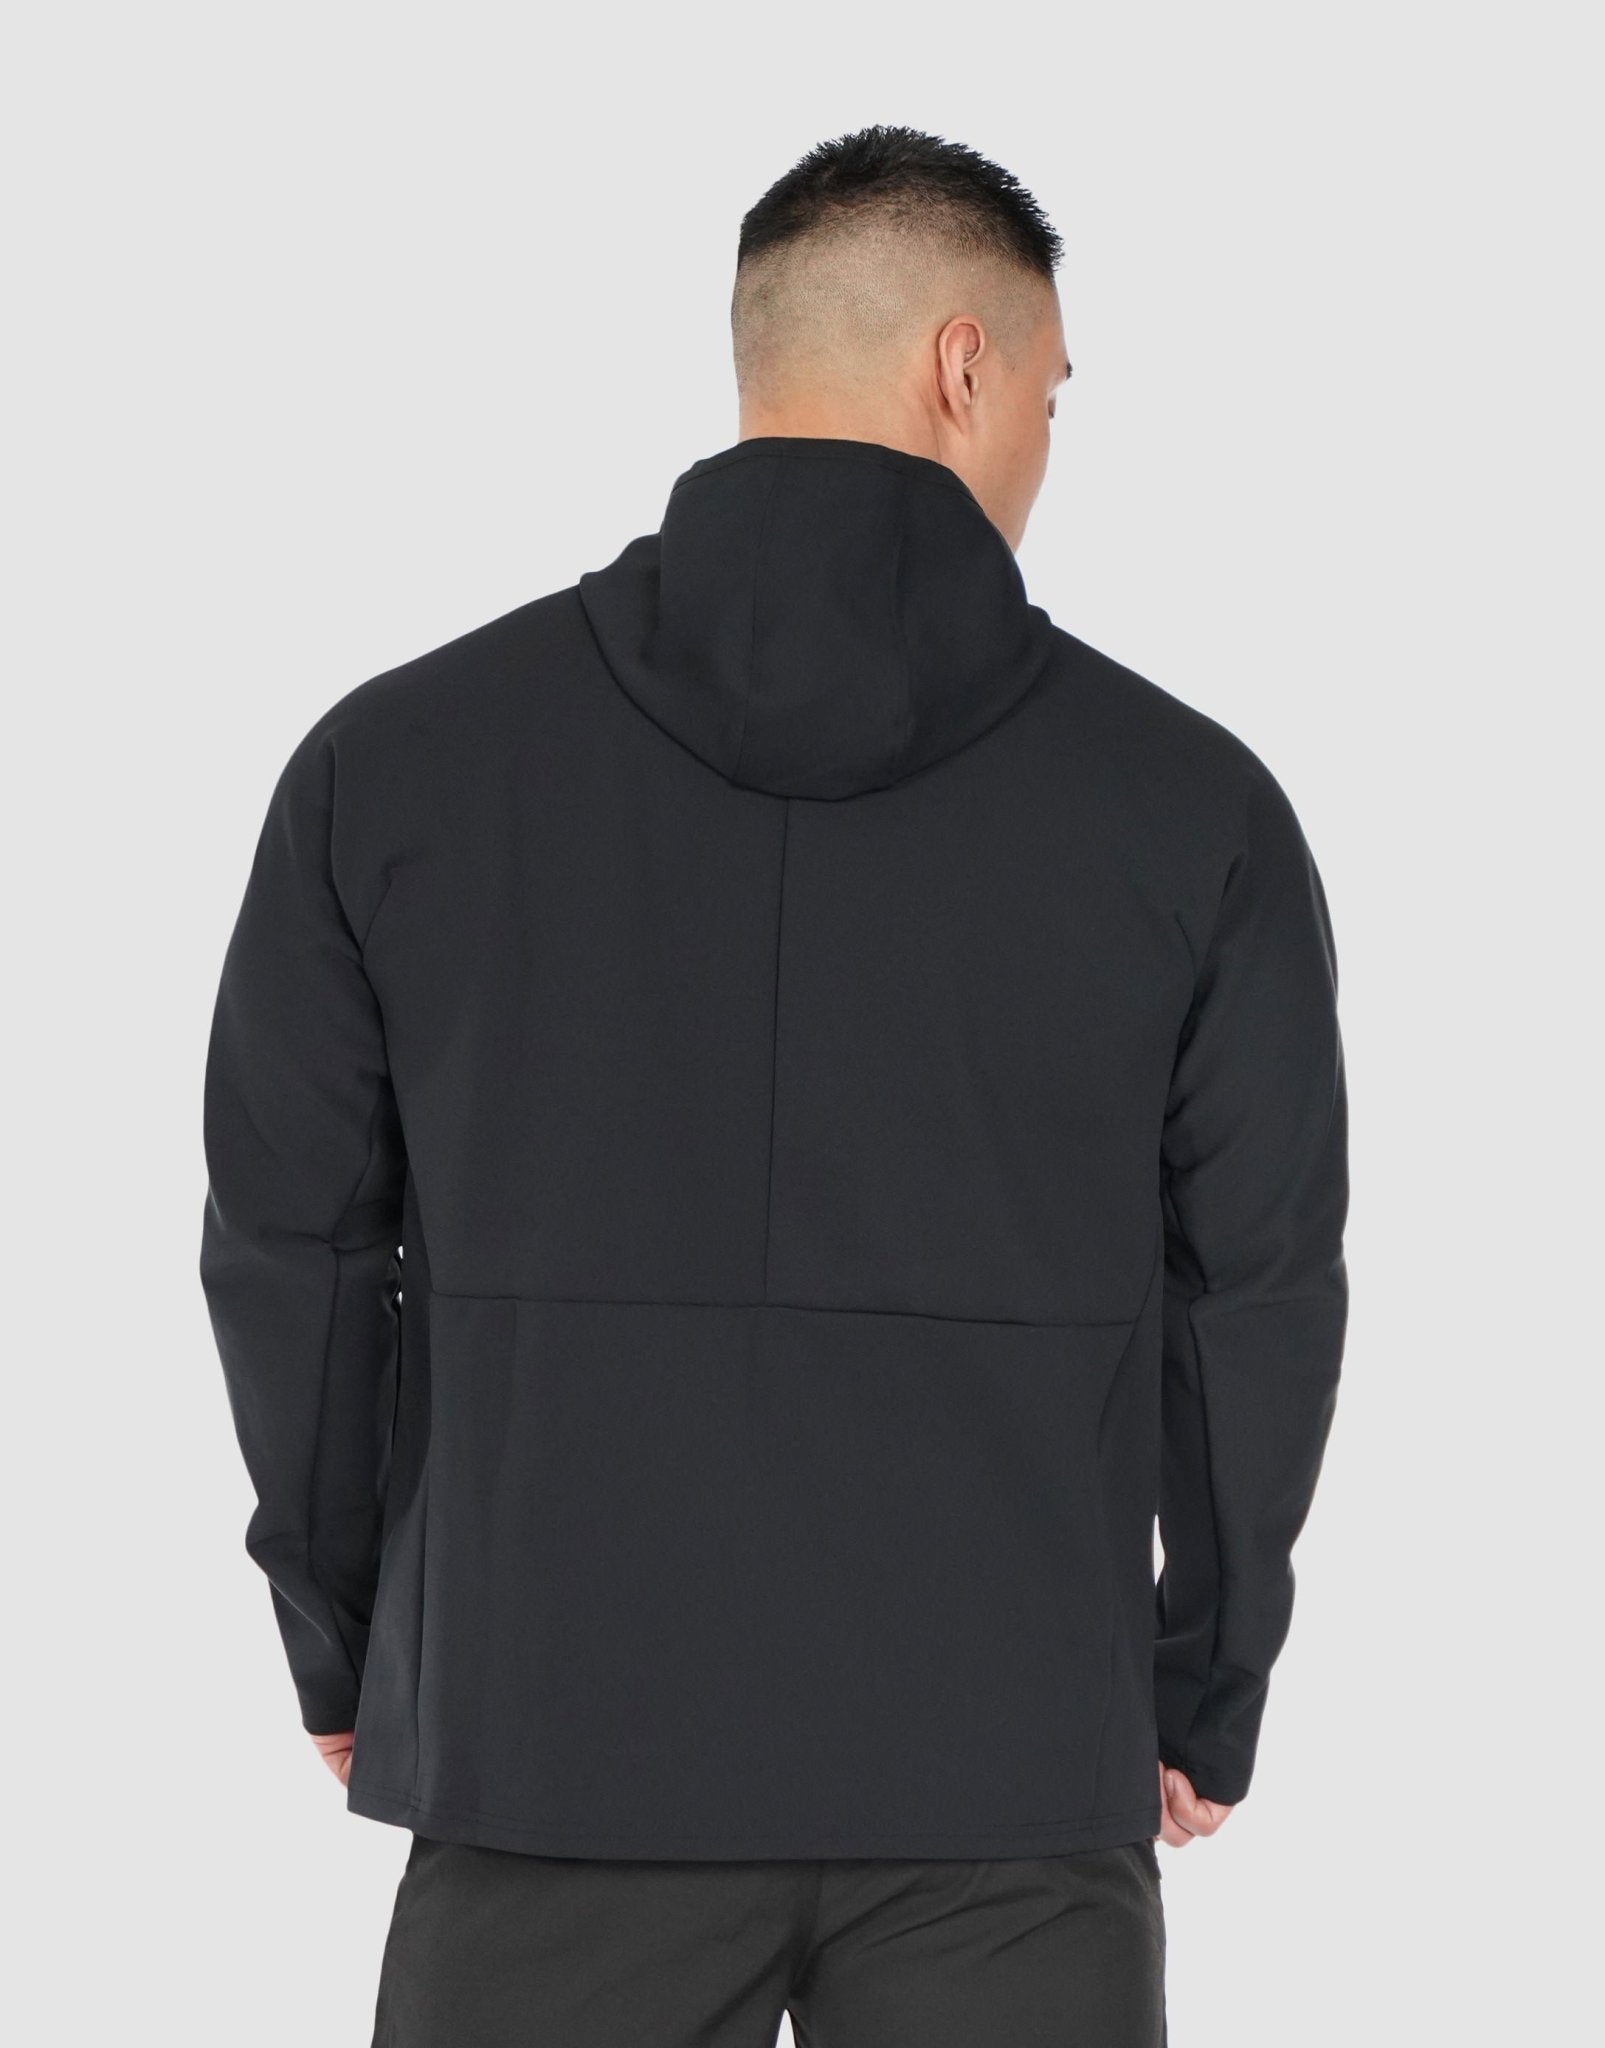 https://devoteewear.ca/cdn/shop/products/devoteewear-performance-hoodie-hoodie-647516.jpg?v=1707229651&width=1605